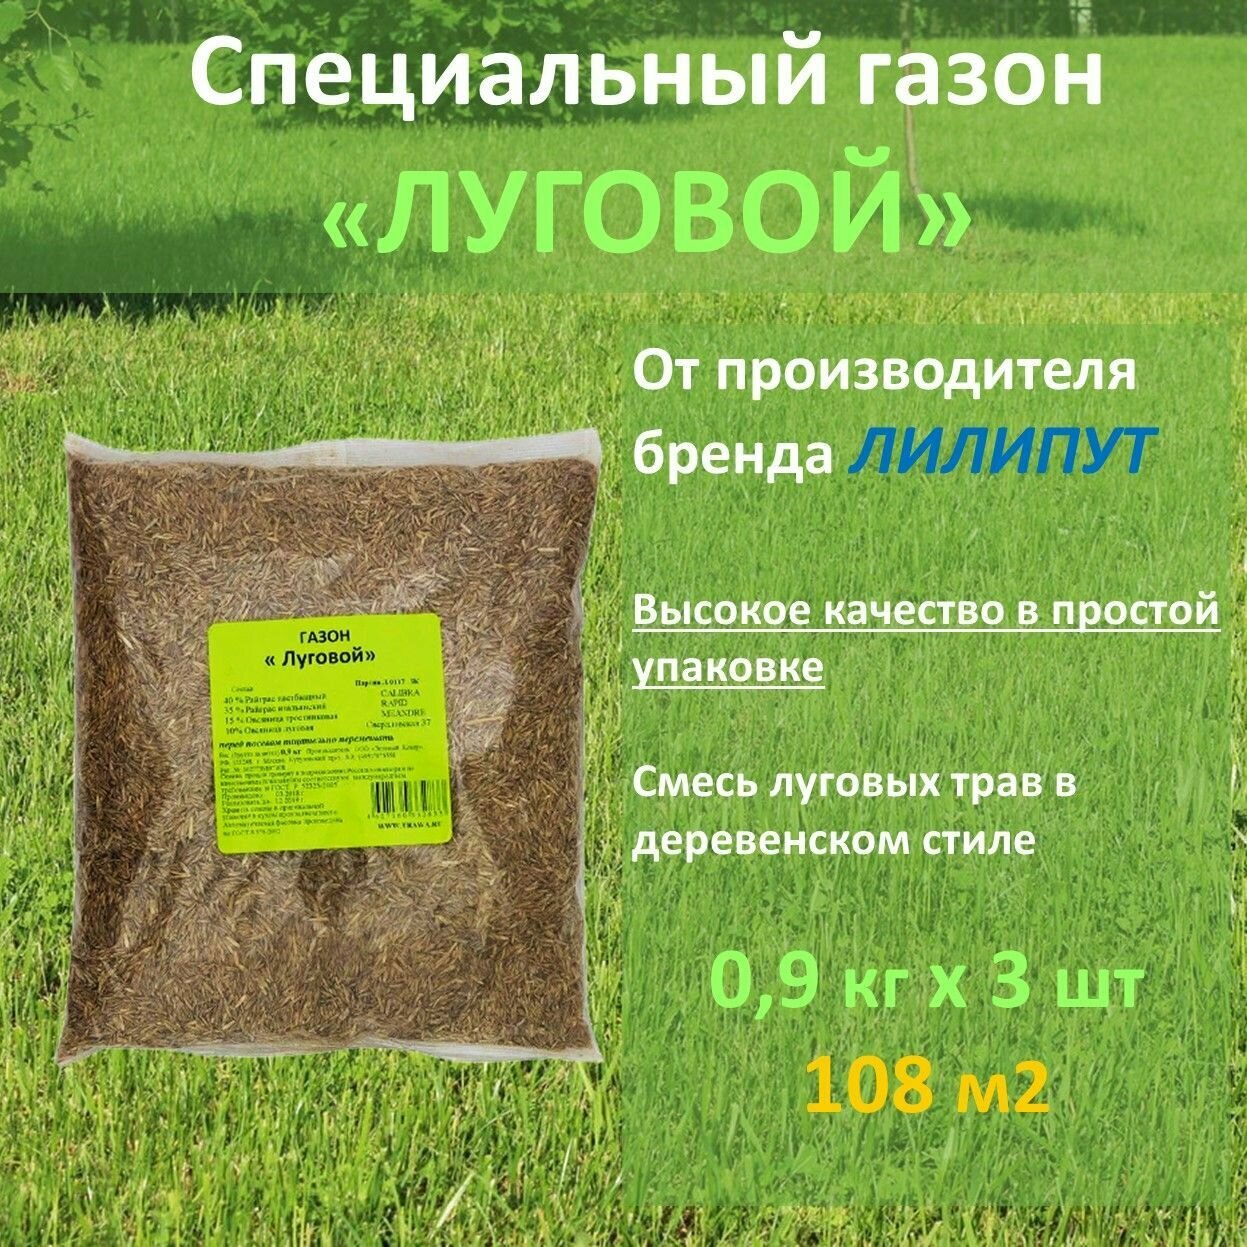 Семена газона Зеленый ковер луговой 09 кг x 3 шт (27 кг)